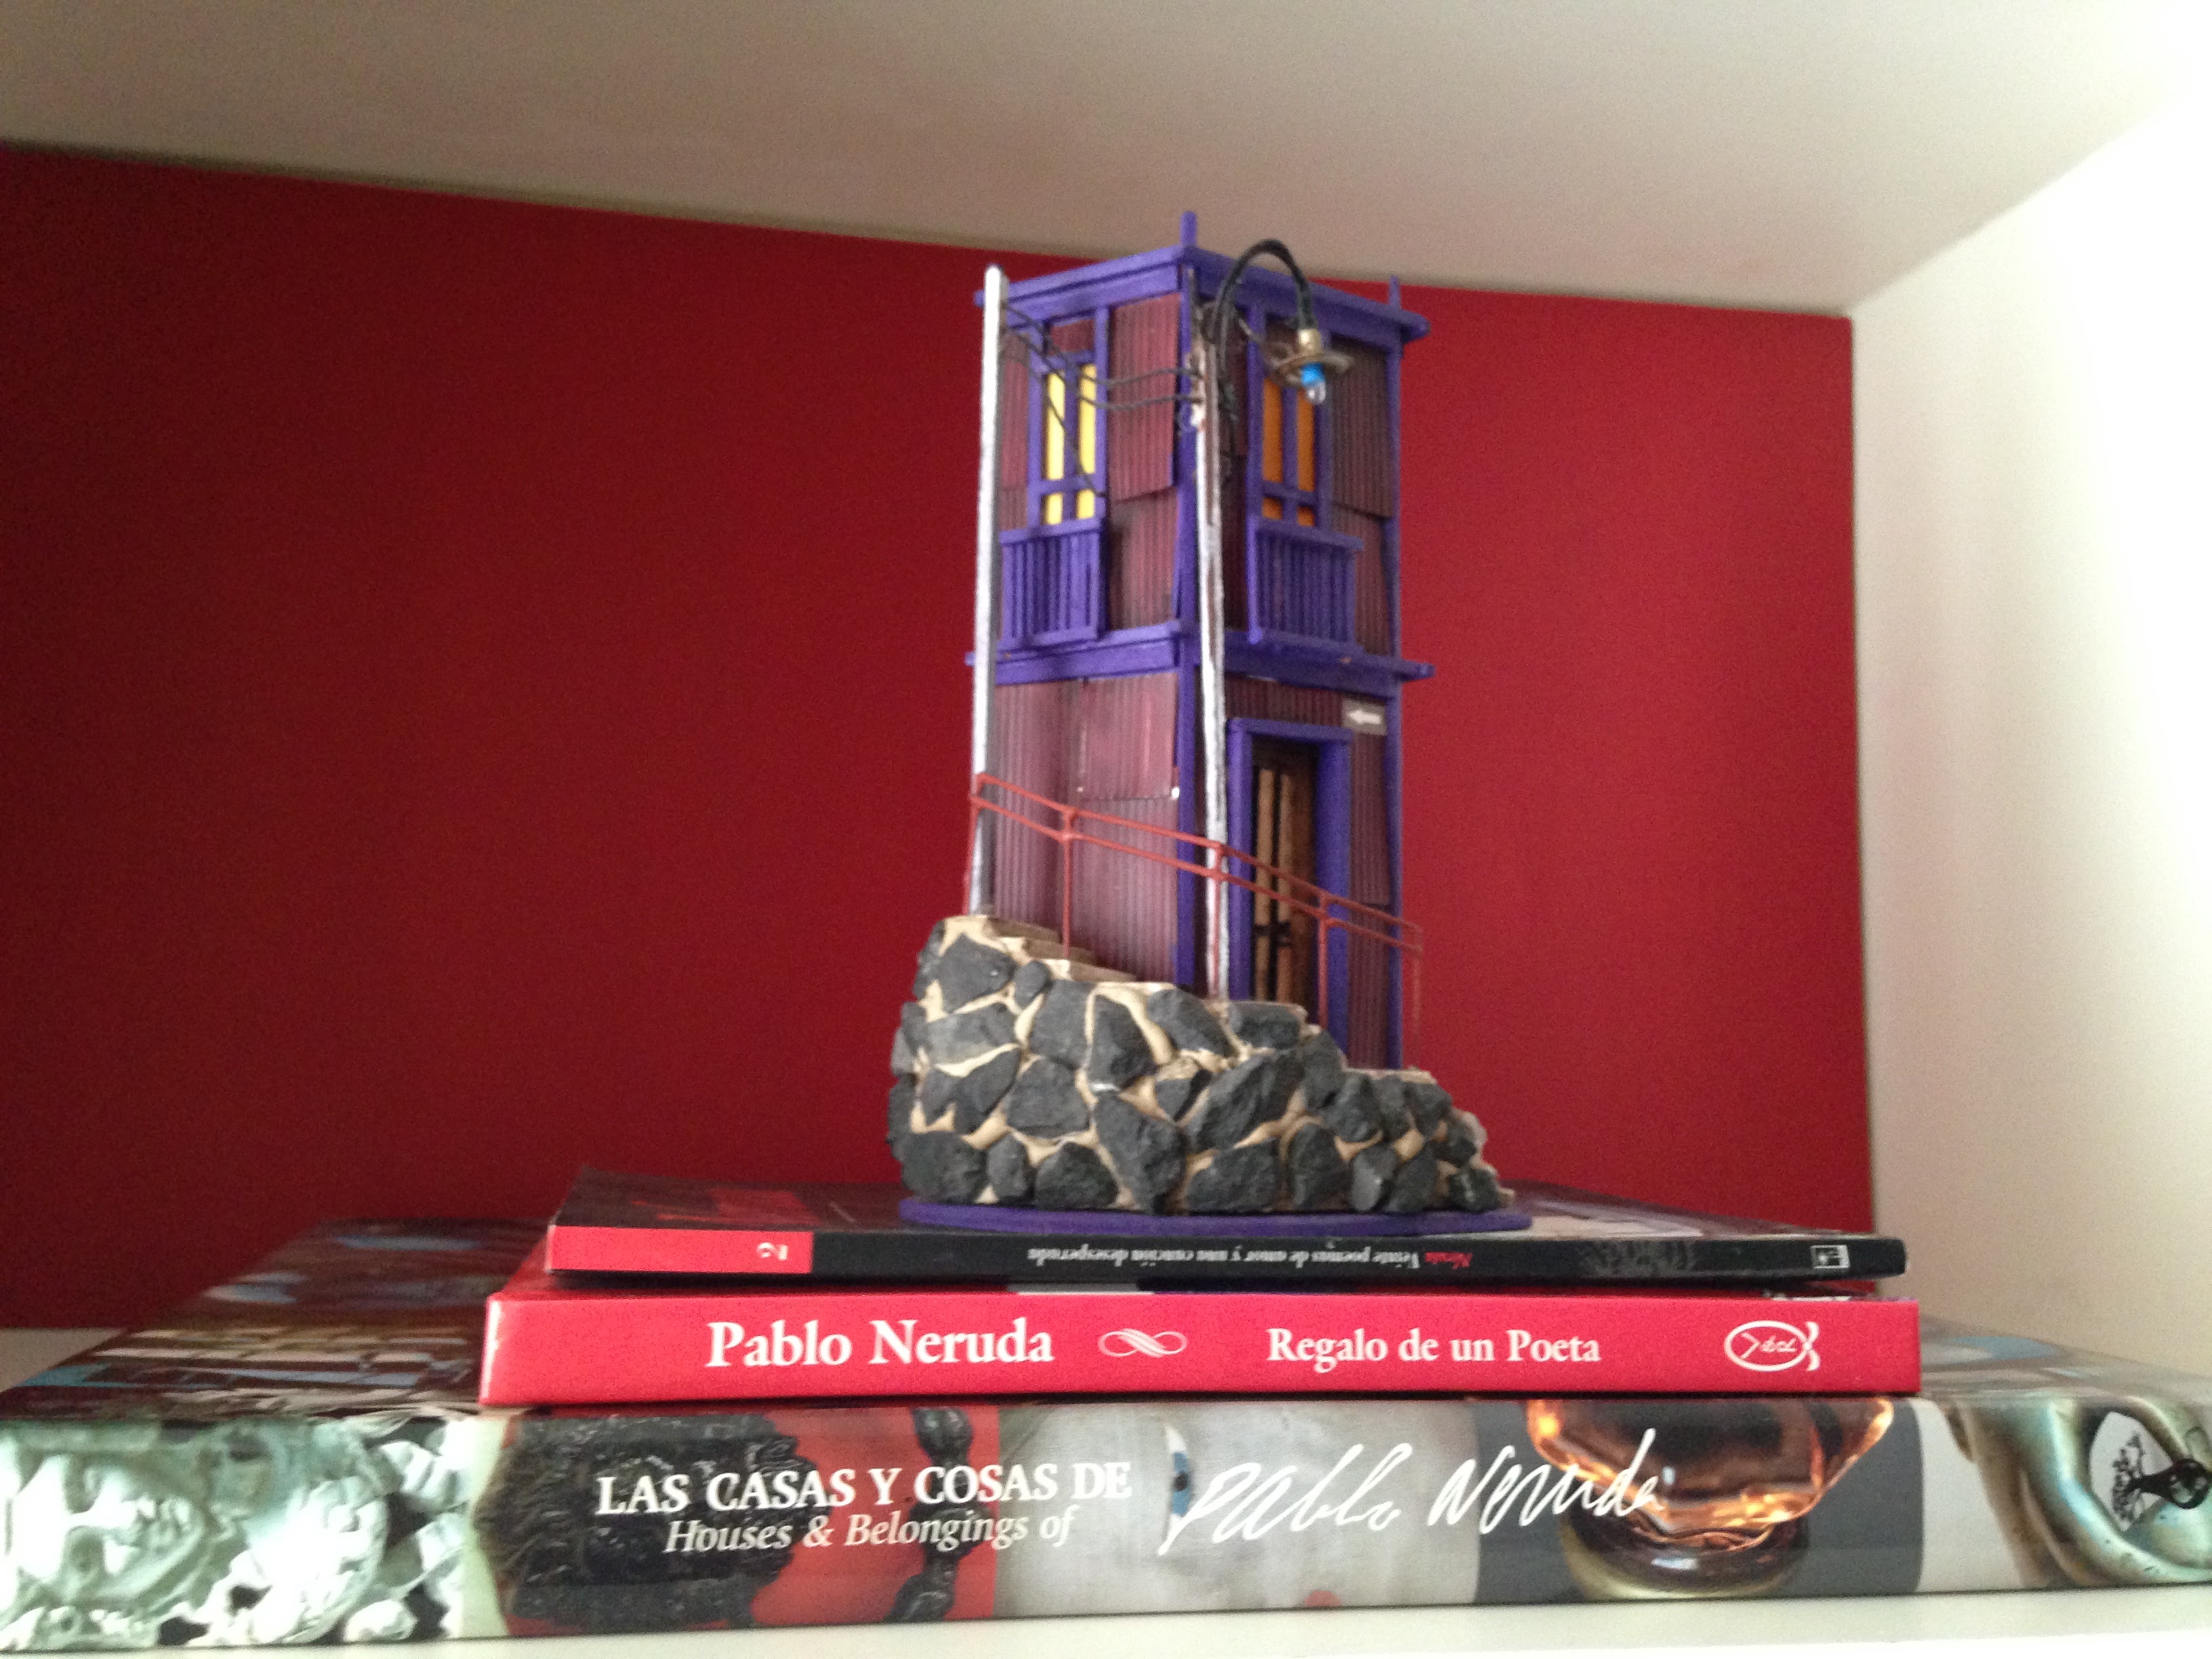 Pablo Neruda e suas casas: inspiração décor pra vida real 